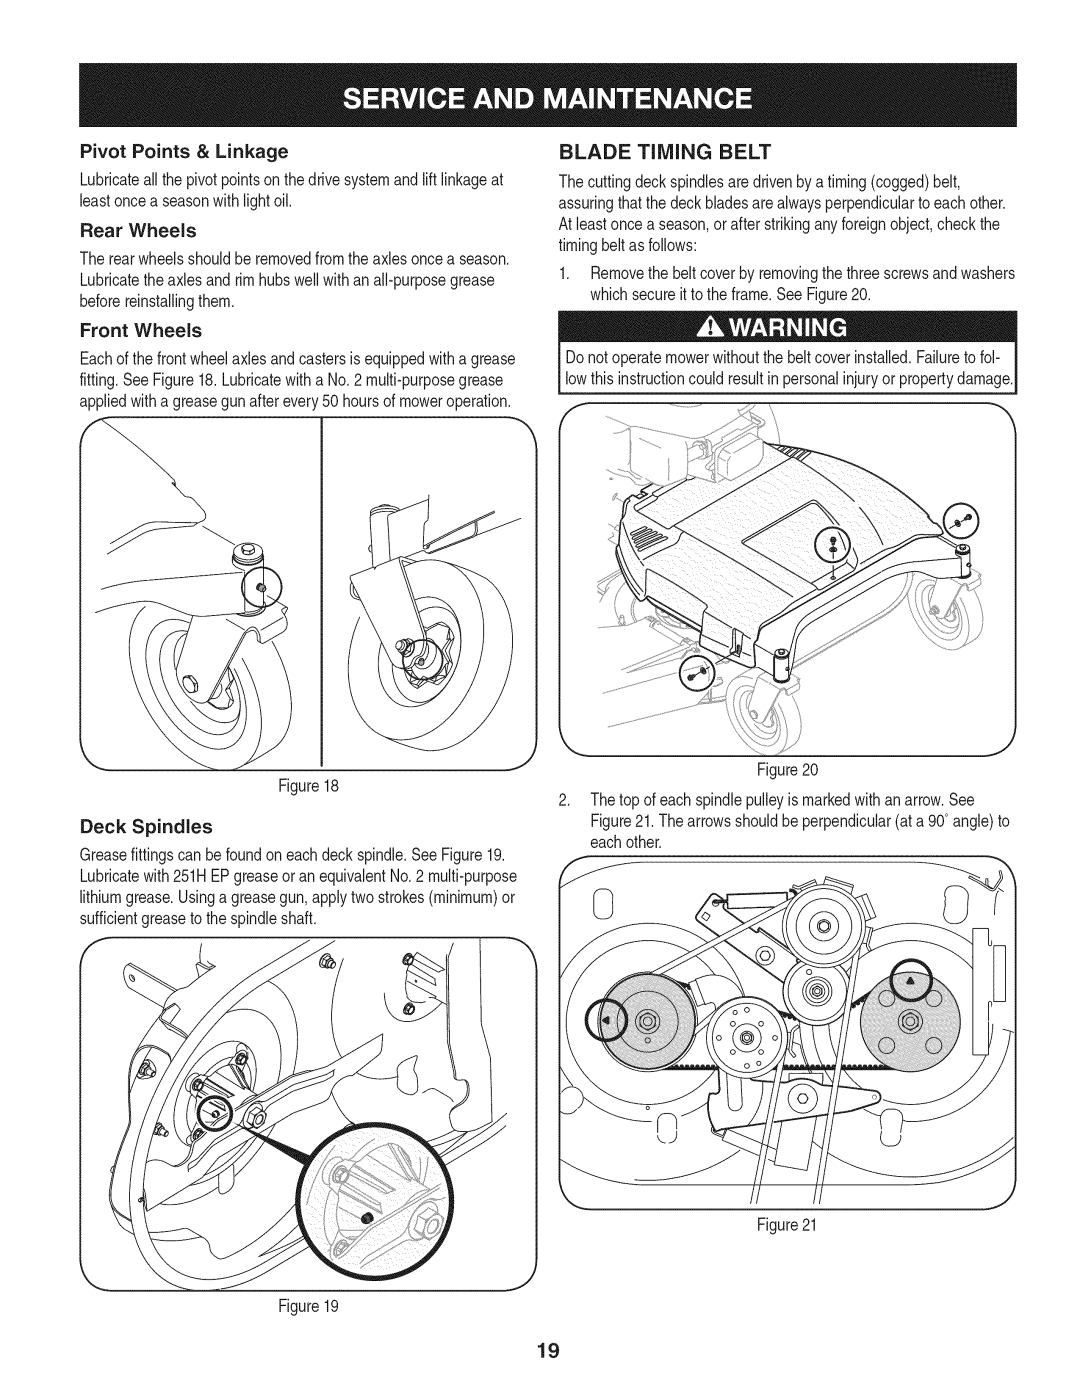 Craftsman 247.889980 manual Blade Timing Belt, Pivot Points & Linkage 